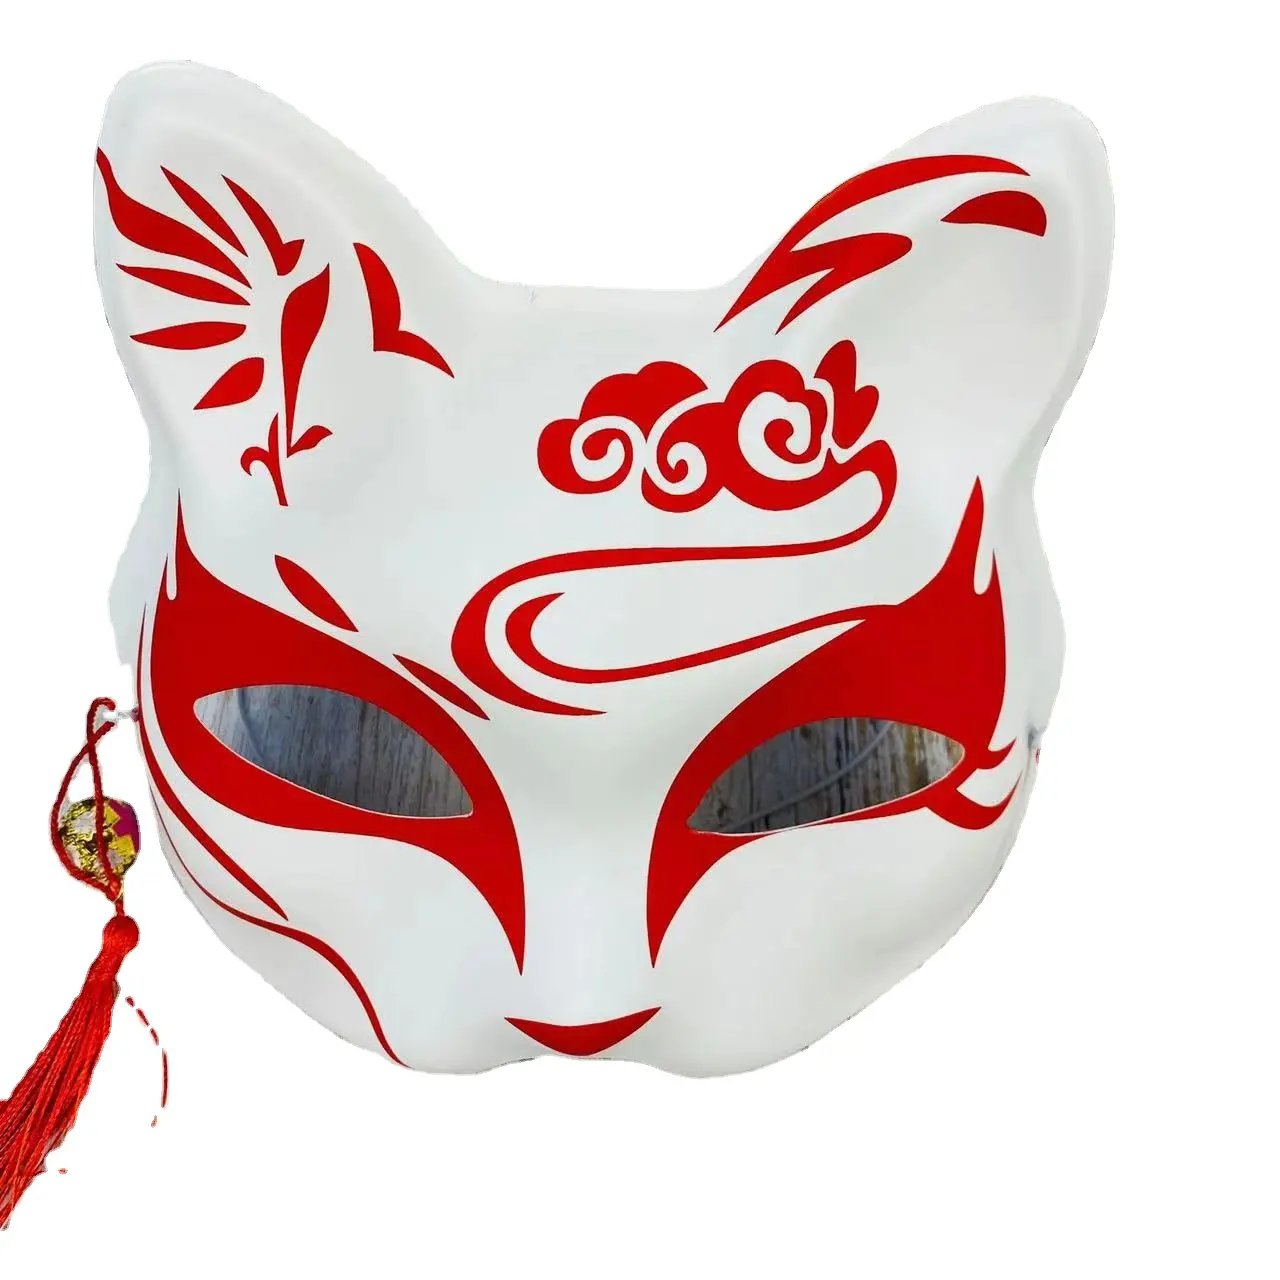 Máscaras de festa artesanal por atacado e máscaras de LED para festas Novo estilo de máscara de fantasia para o Halloween